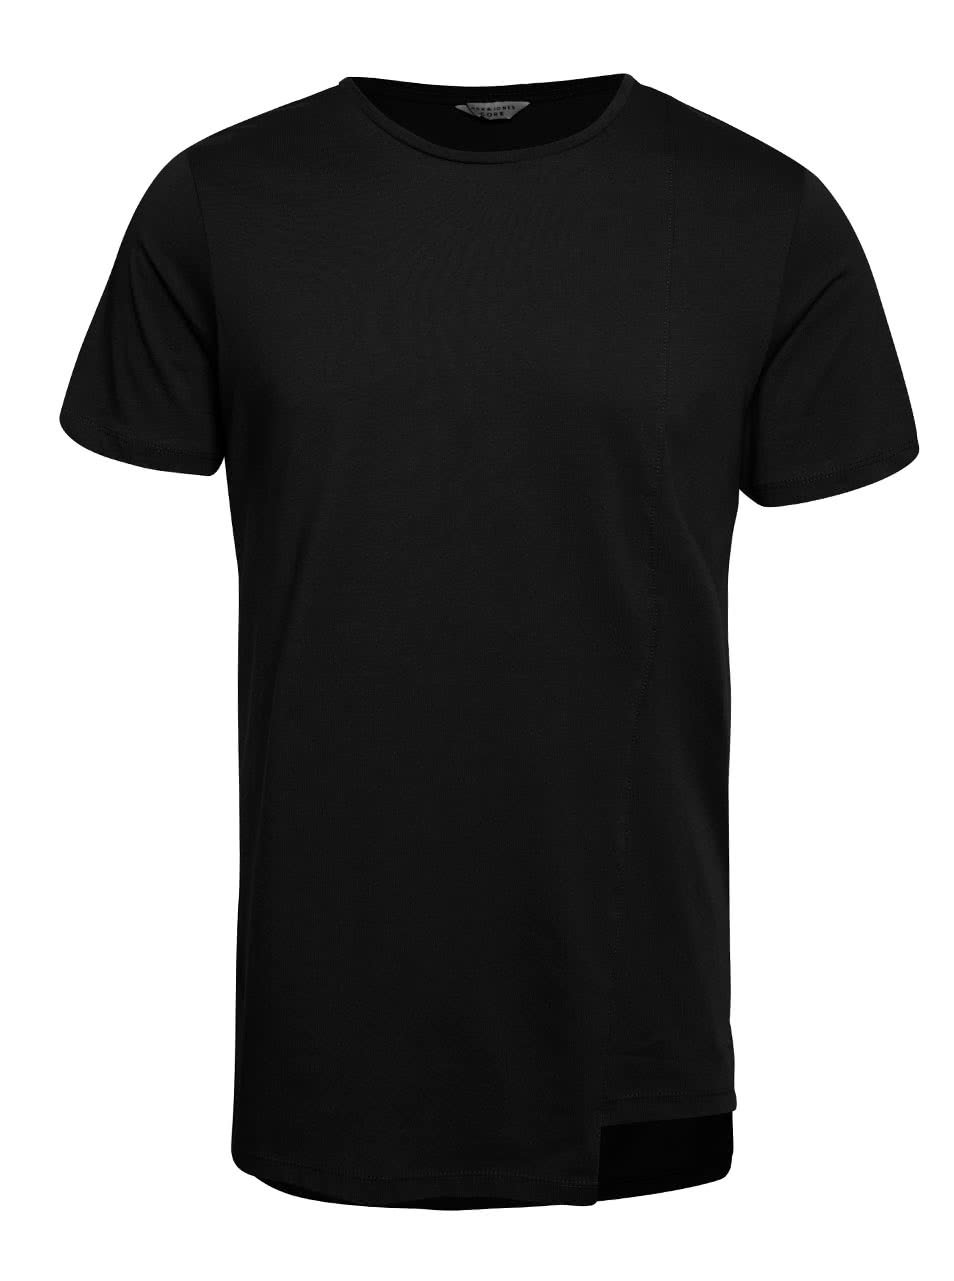 Černé triko s asymetrickým spodním lemem Jack & Jones Creed